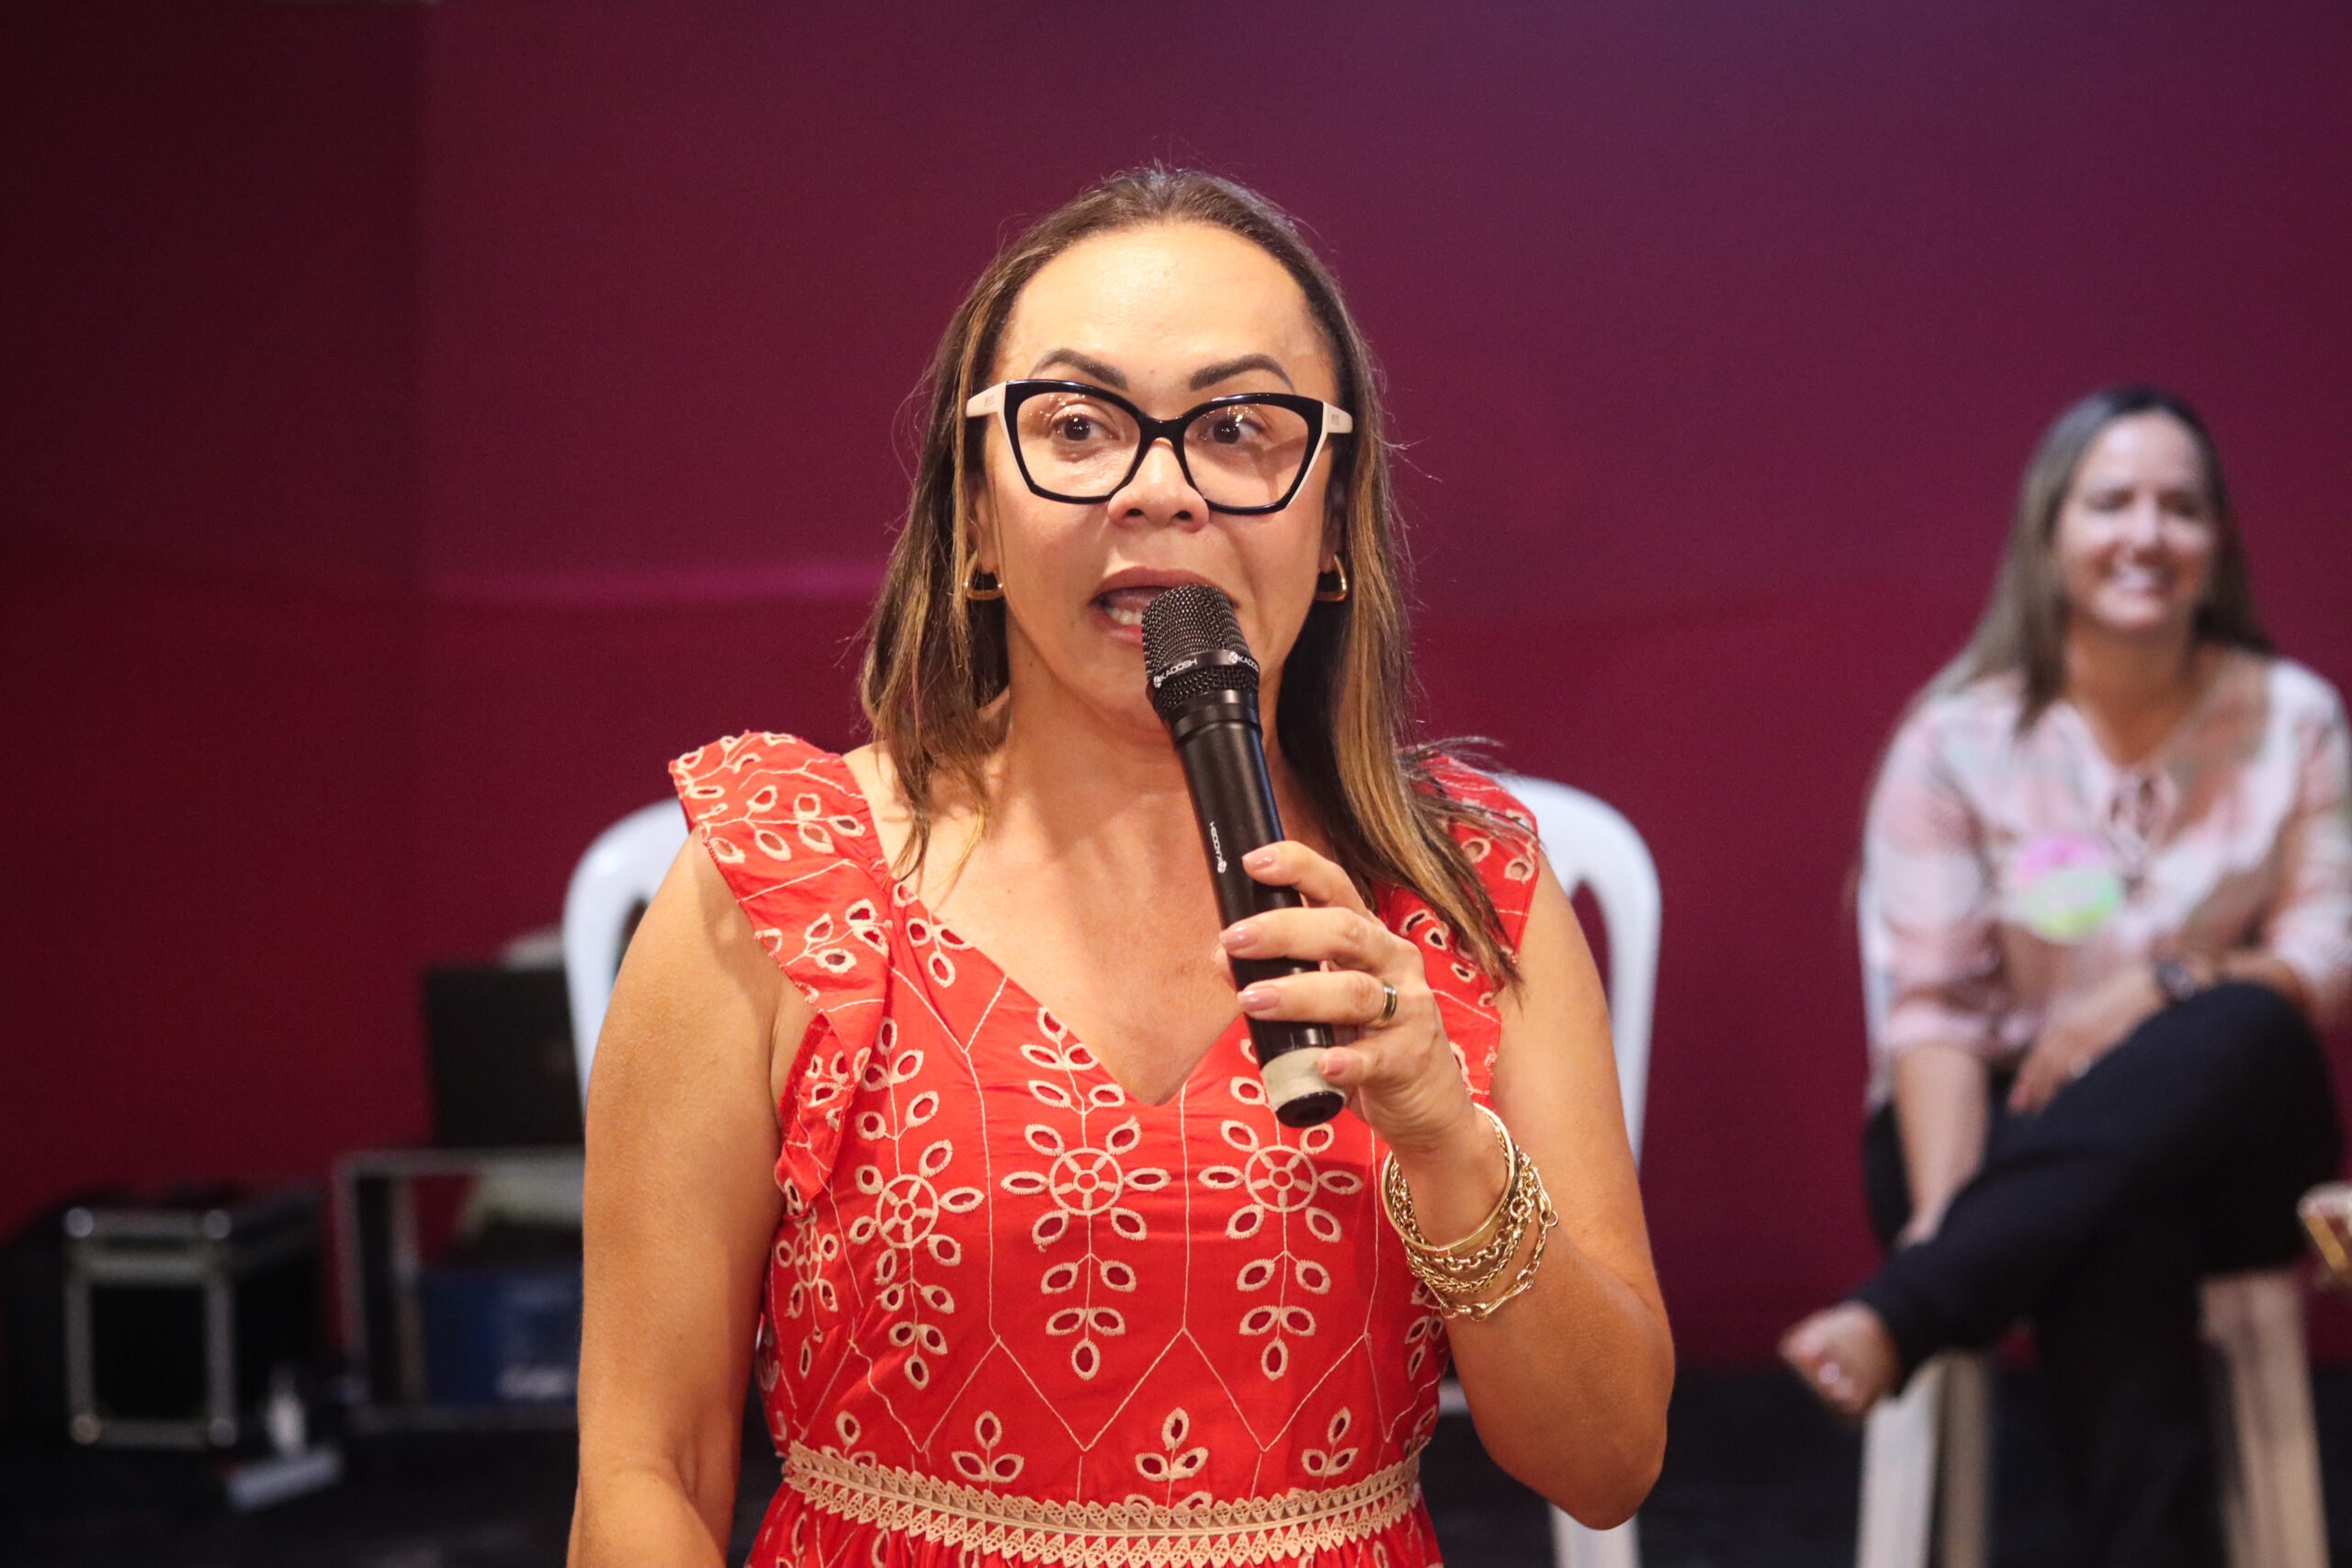 Gabriela Mendes reúne multidão em lançamento de pré-candidatura à vereadora